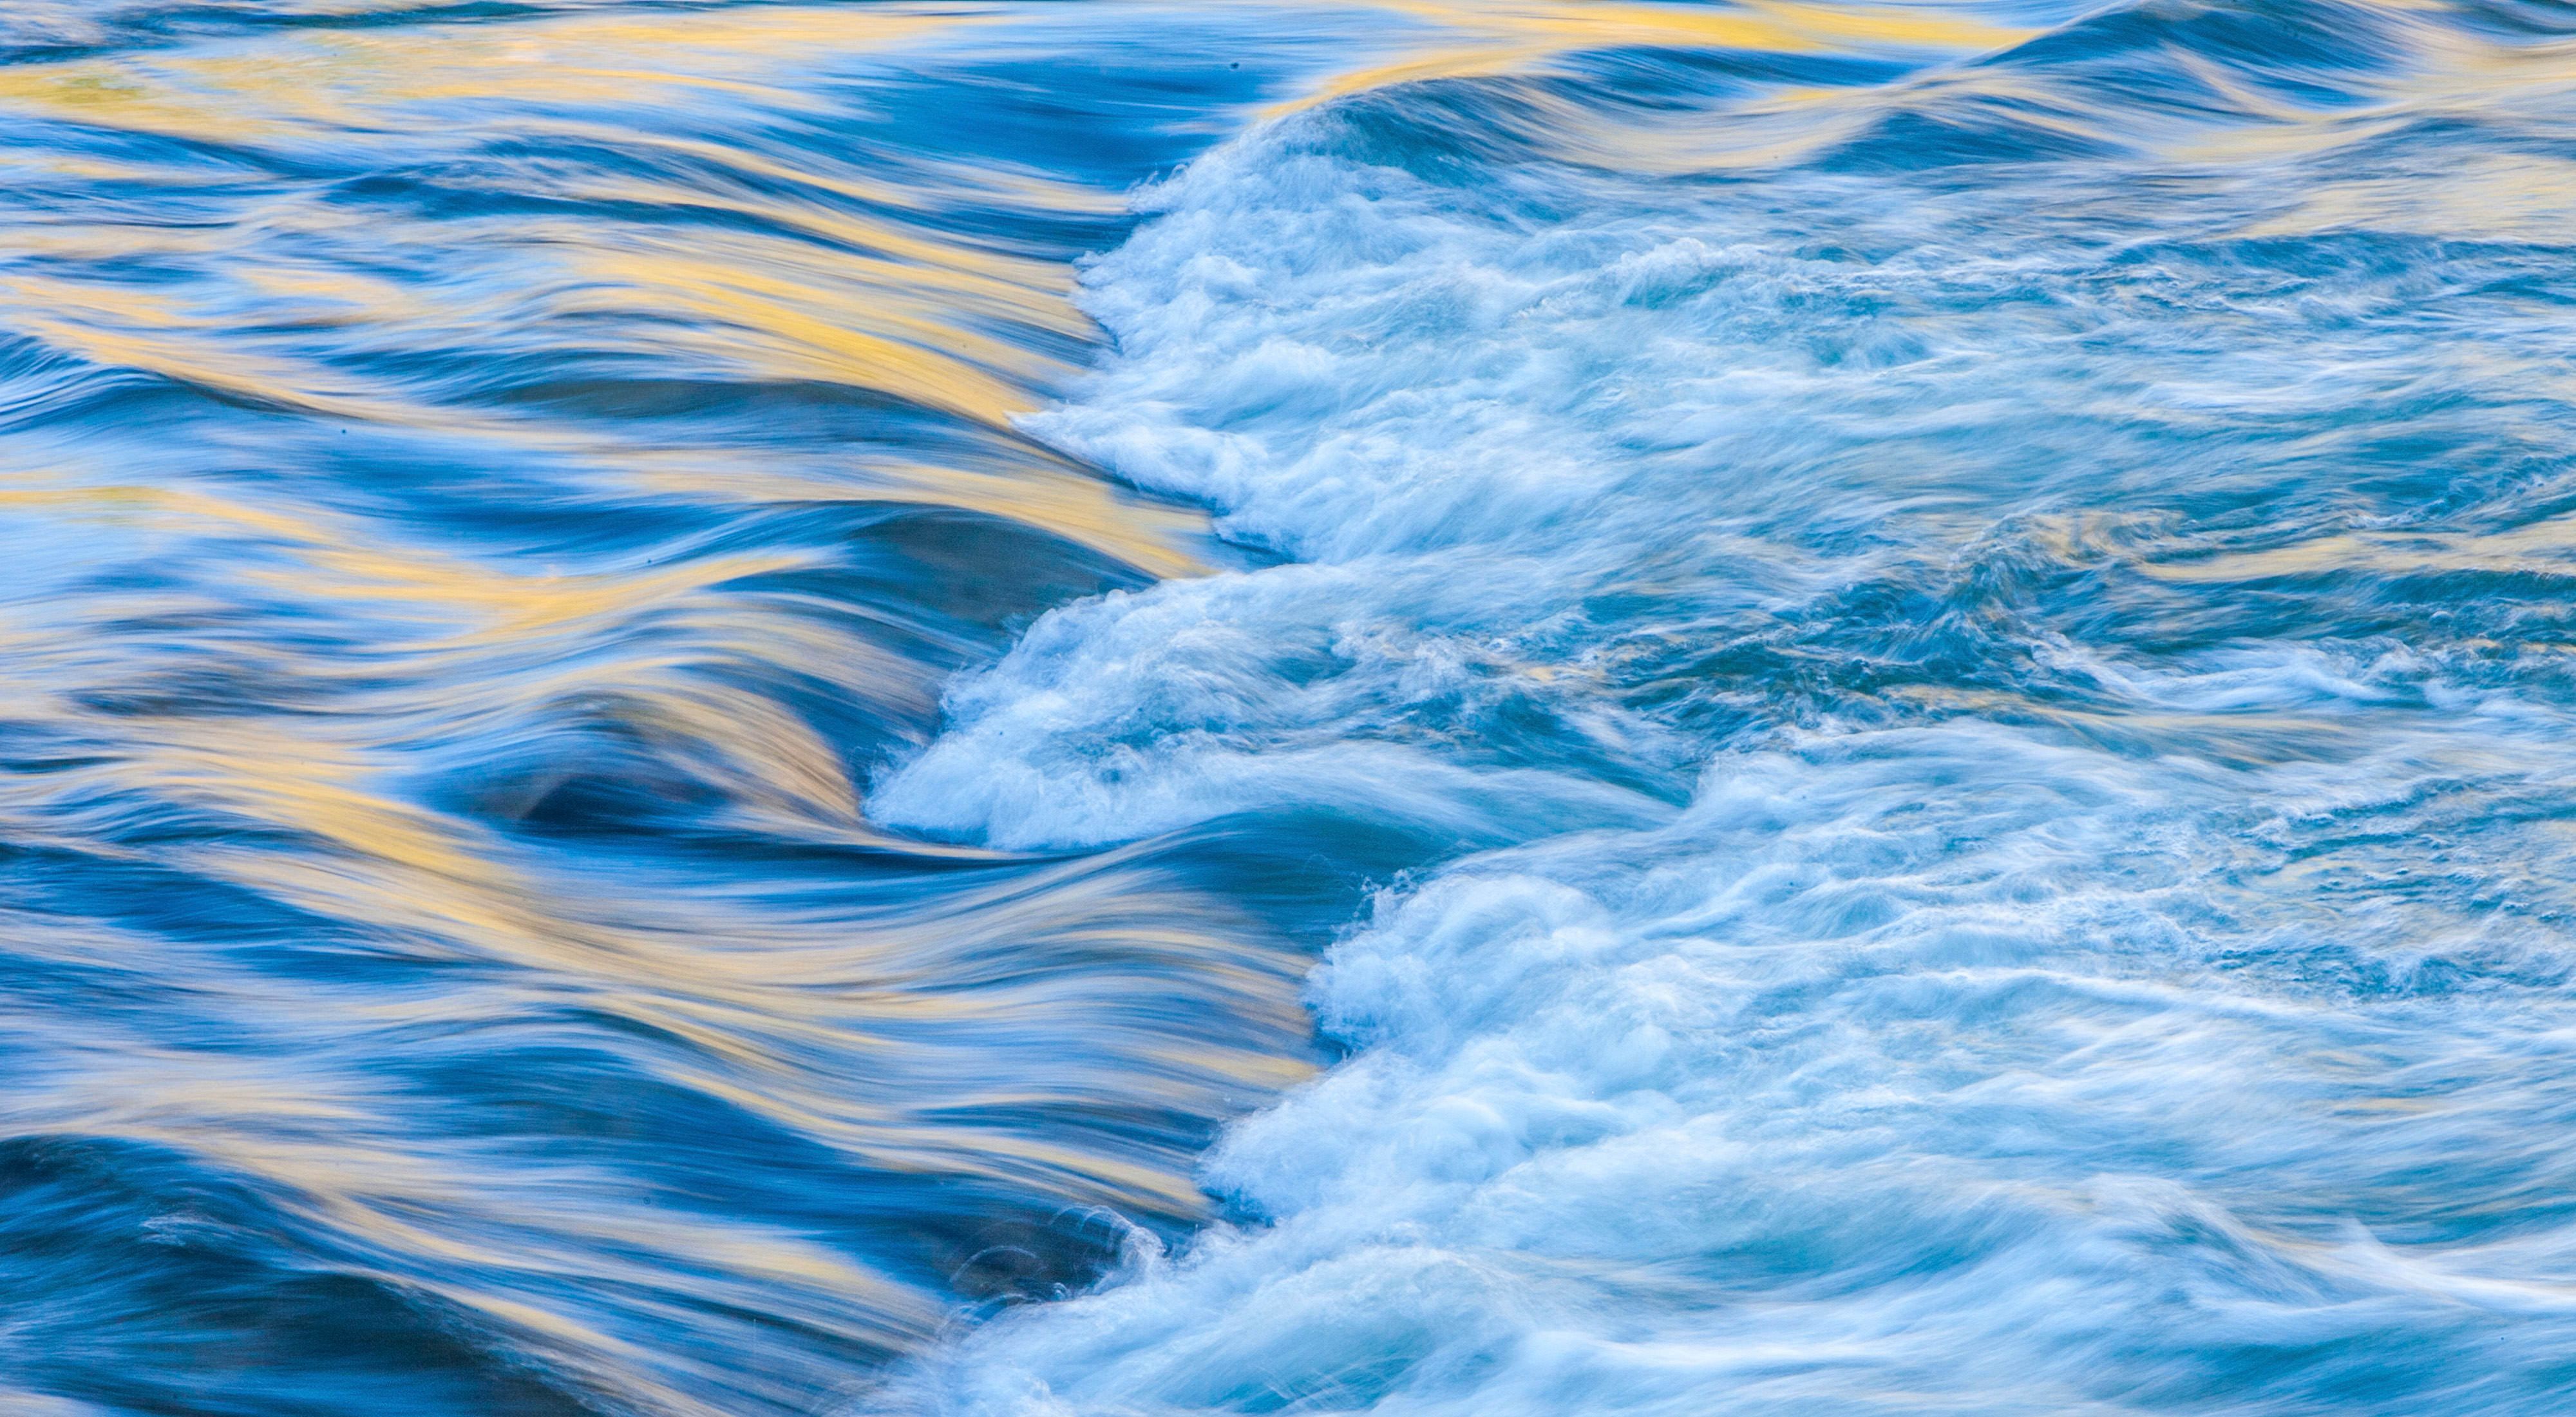  A closeup view of rushing blue water.